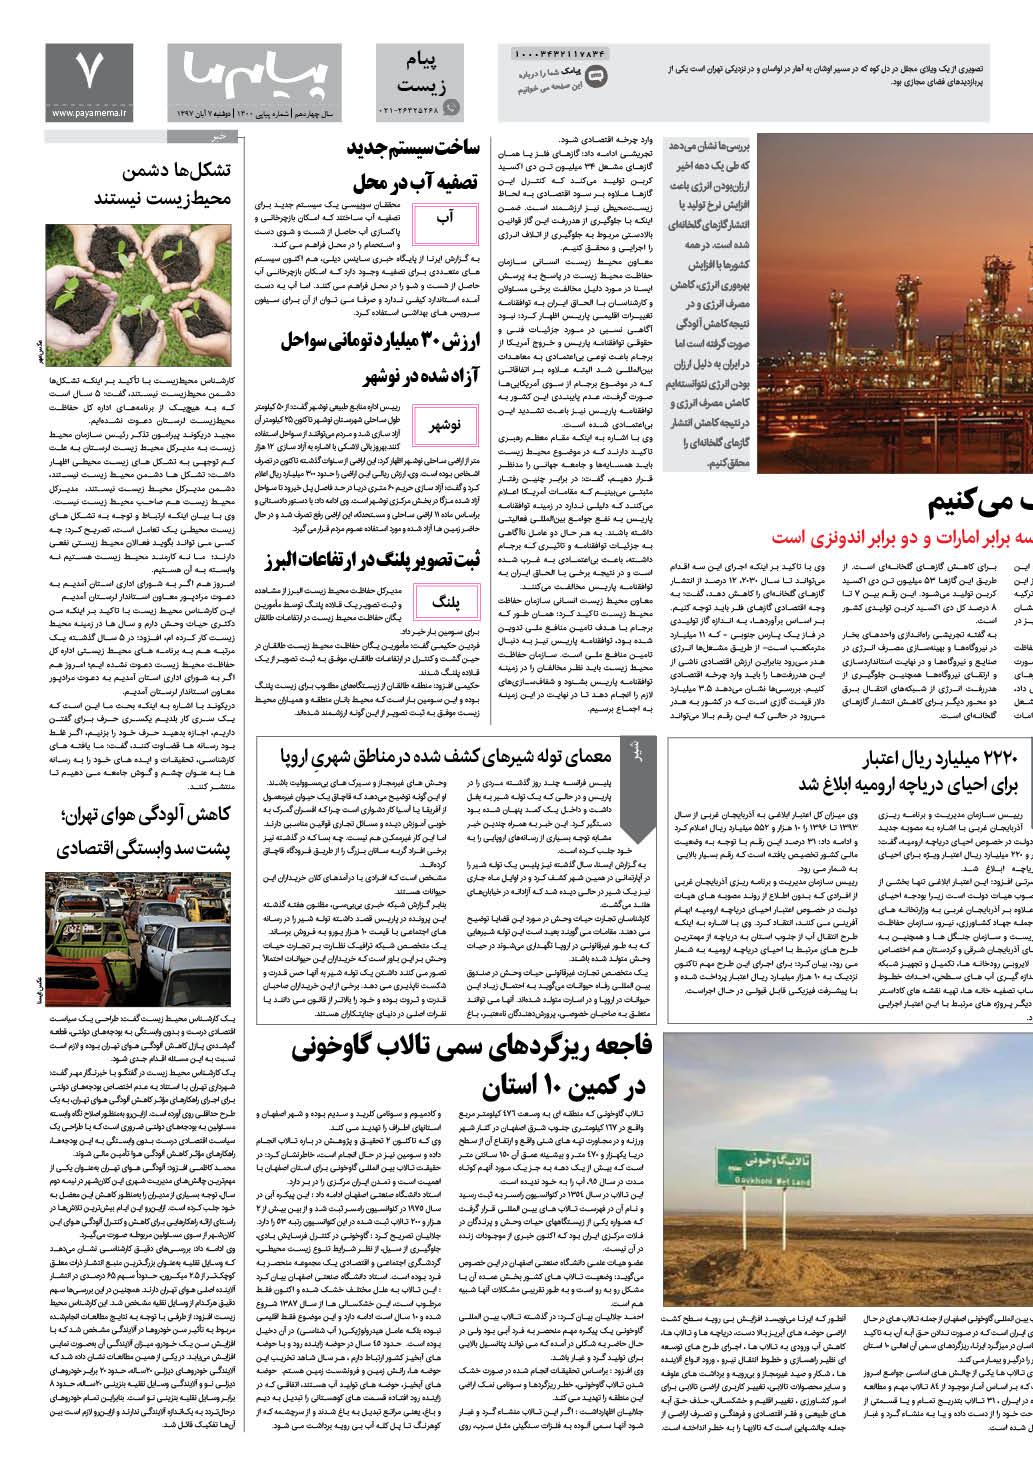 صفحه پیام زیست شماره 1300 روزنامه پیام ما